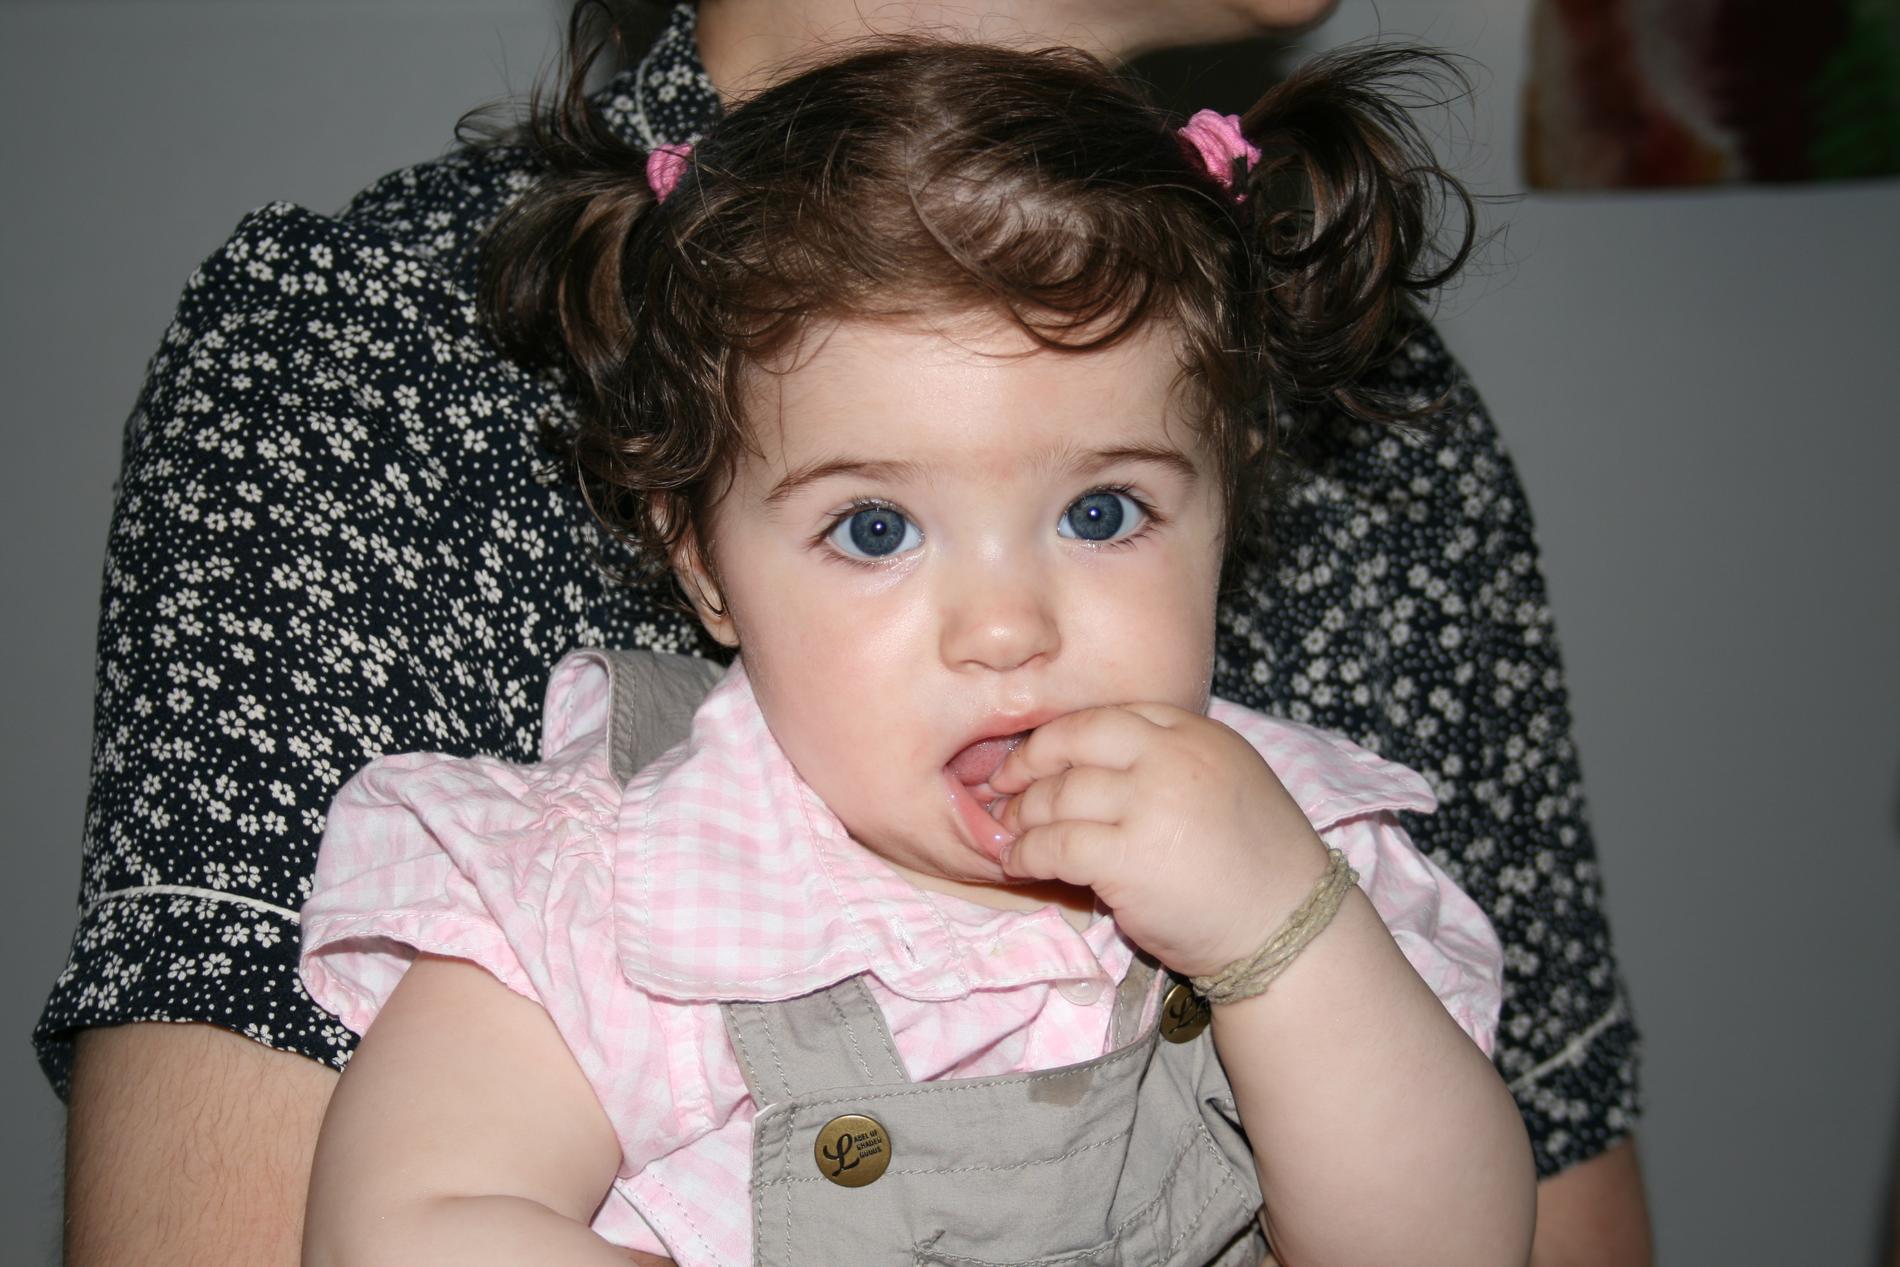 Samir Hajder har skickat in bild på ettåriga dottern Amanda: ”Vår kära Amanda har alltid haft superkalufs sen hon föddes”.